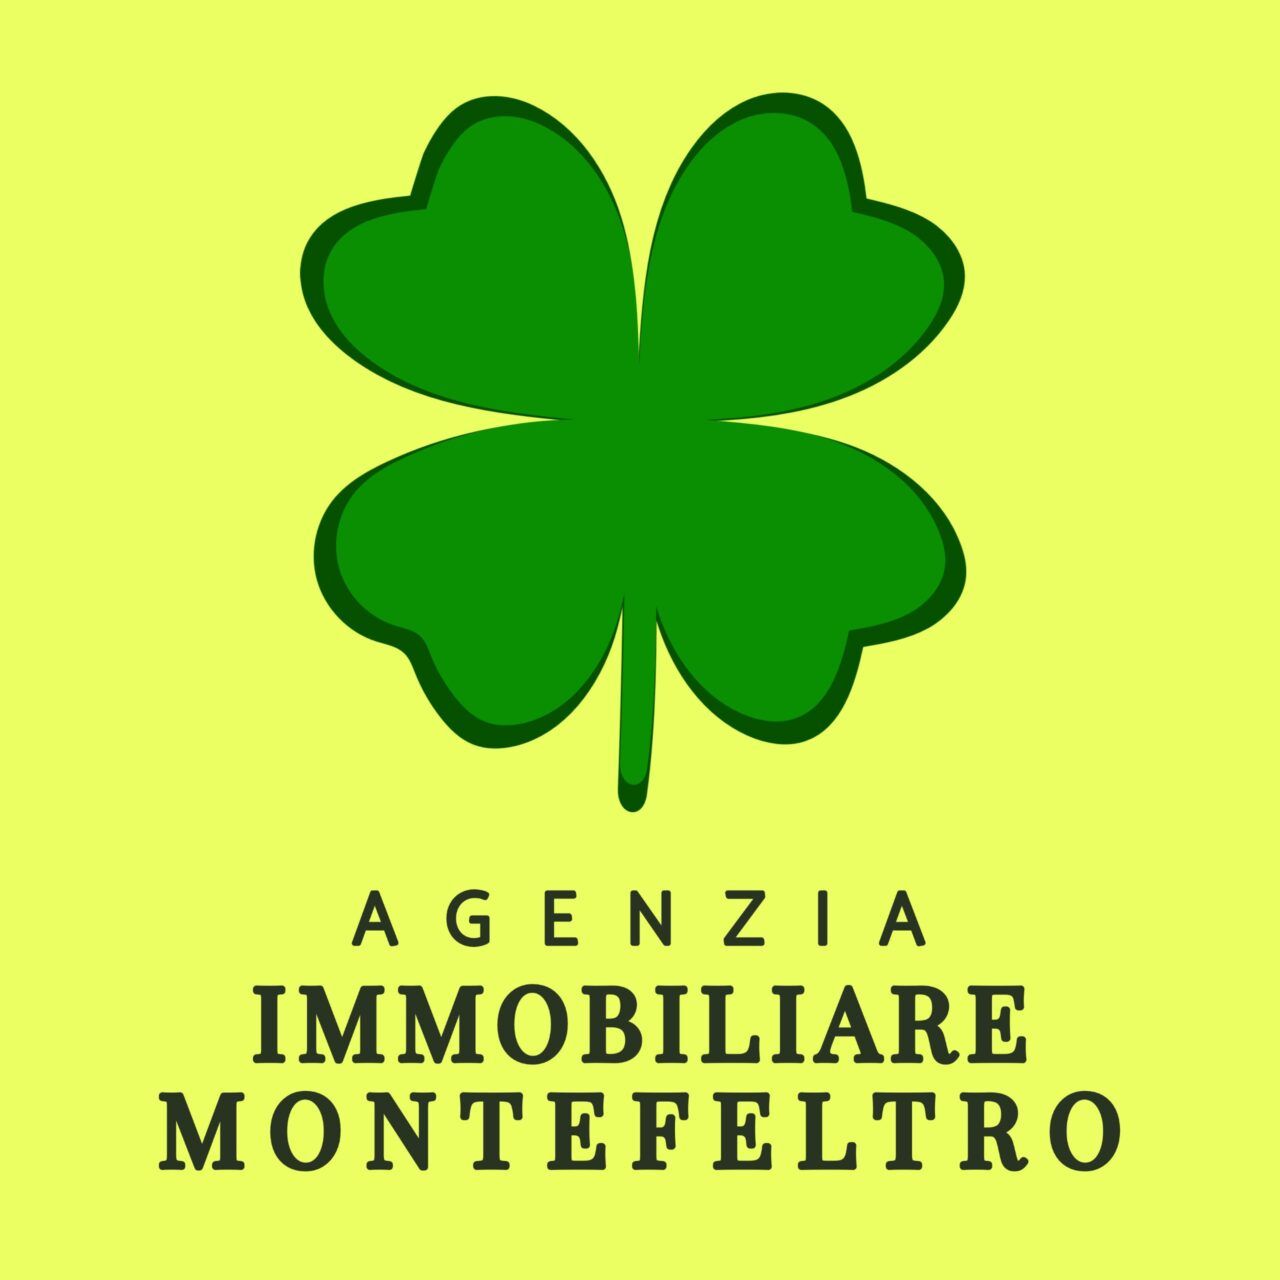 Agenzia Immobiliare Montefeltro